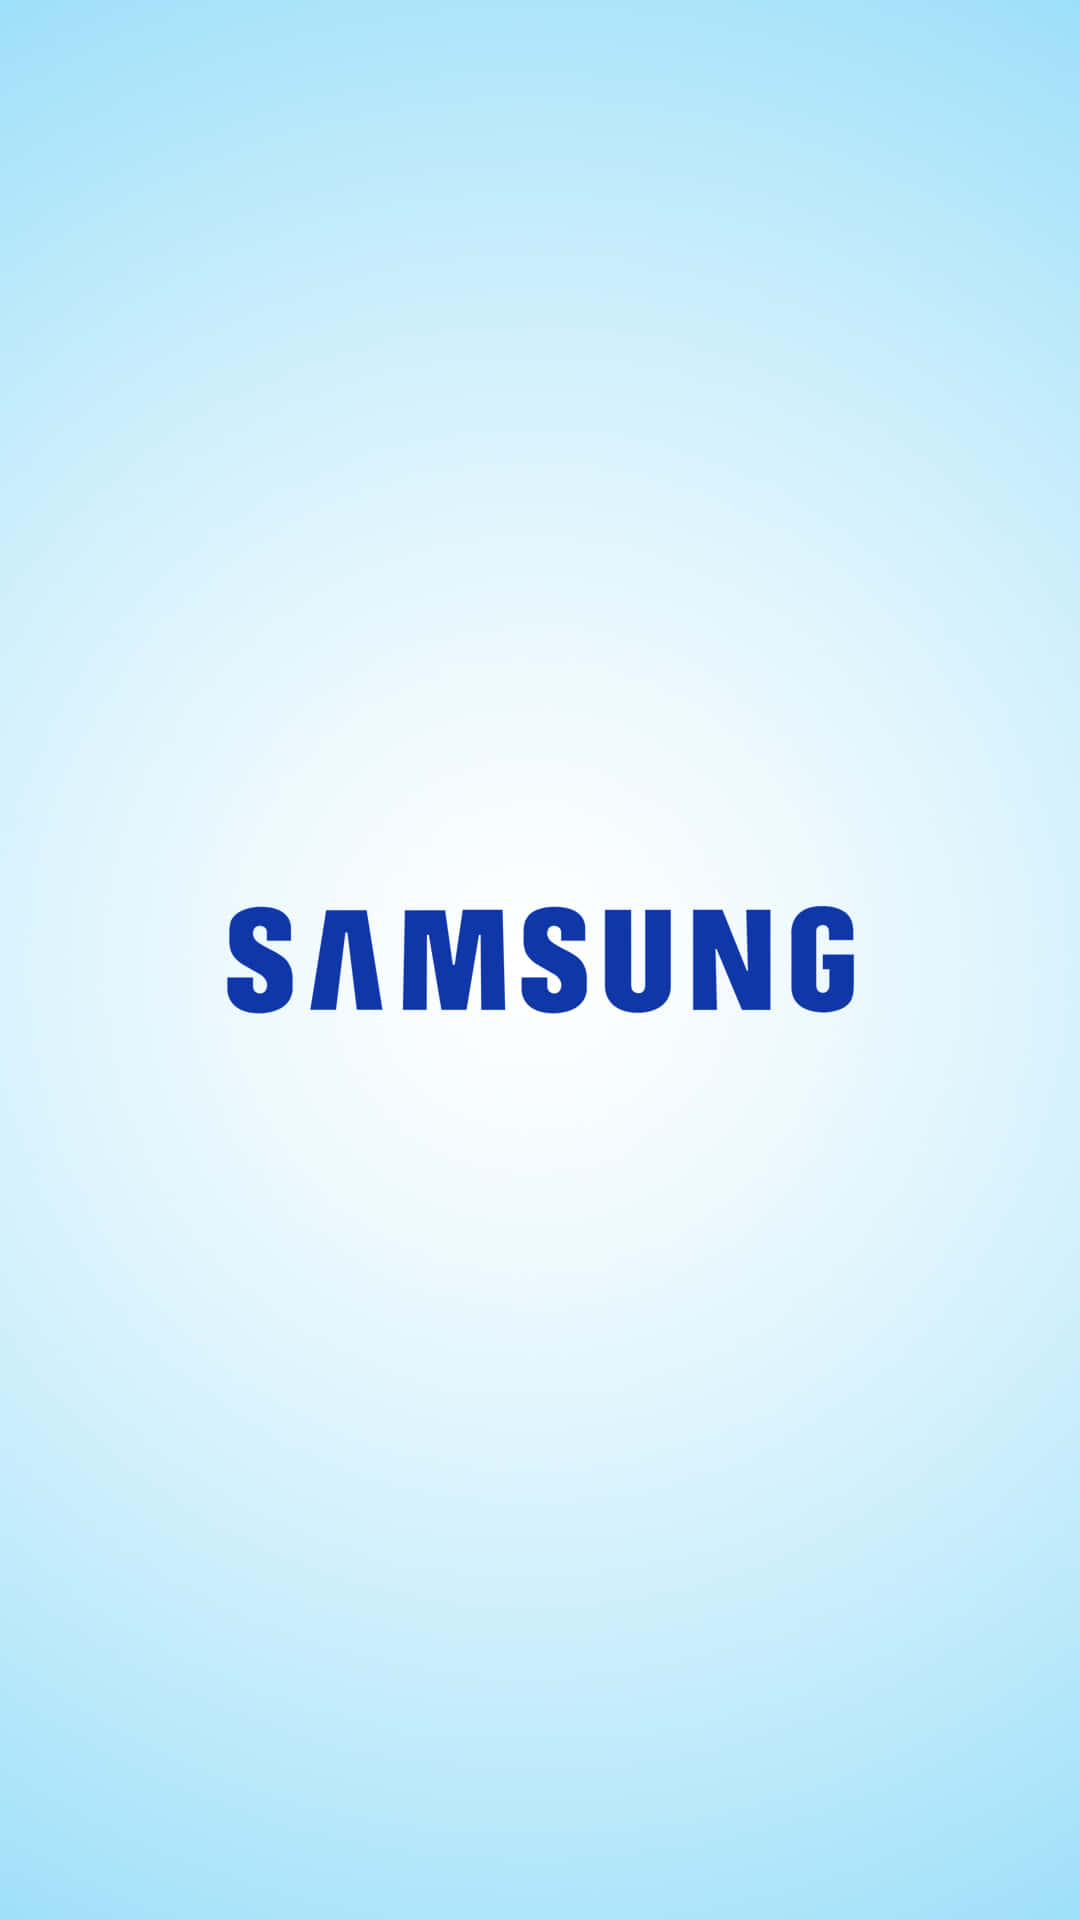 Déjatellevar Por Lo Futurista Con Samsung - Aprovechando La Tecnología Avanzada Hoy Mismo.